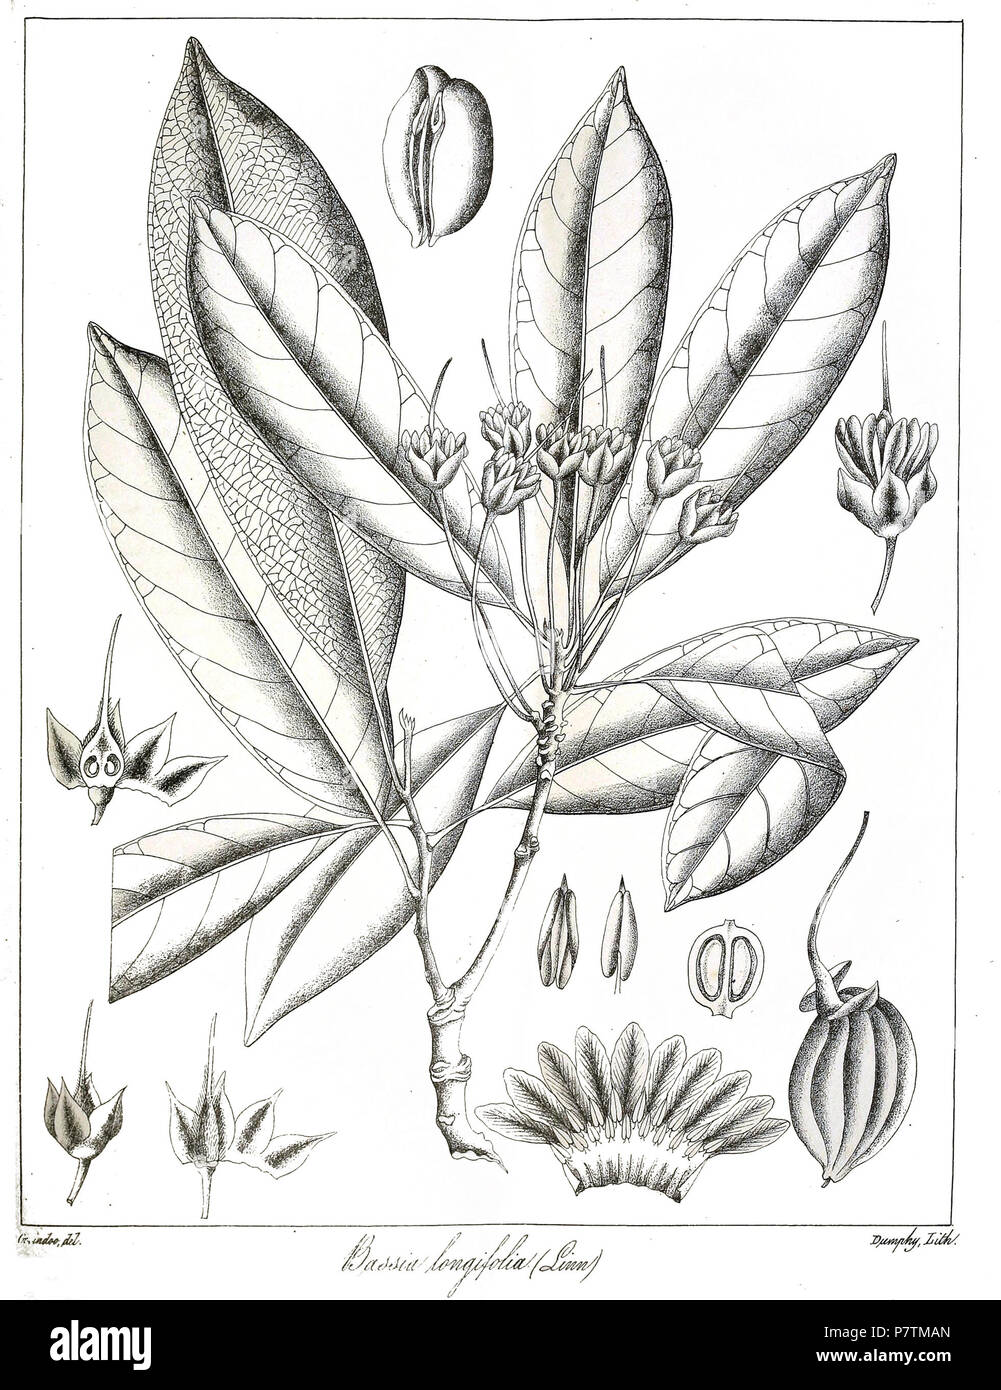 Bassia longifolia = Madhuca longifolia . 1873 35 Bassia longifolia Govindoo Stock Photo